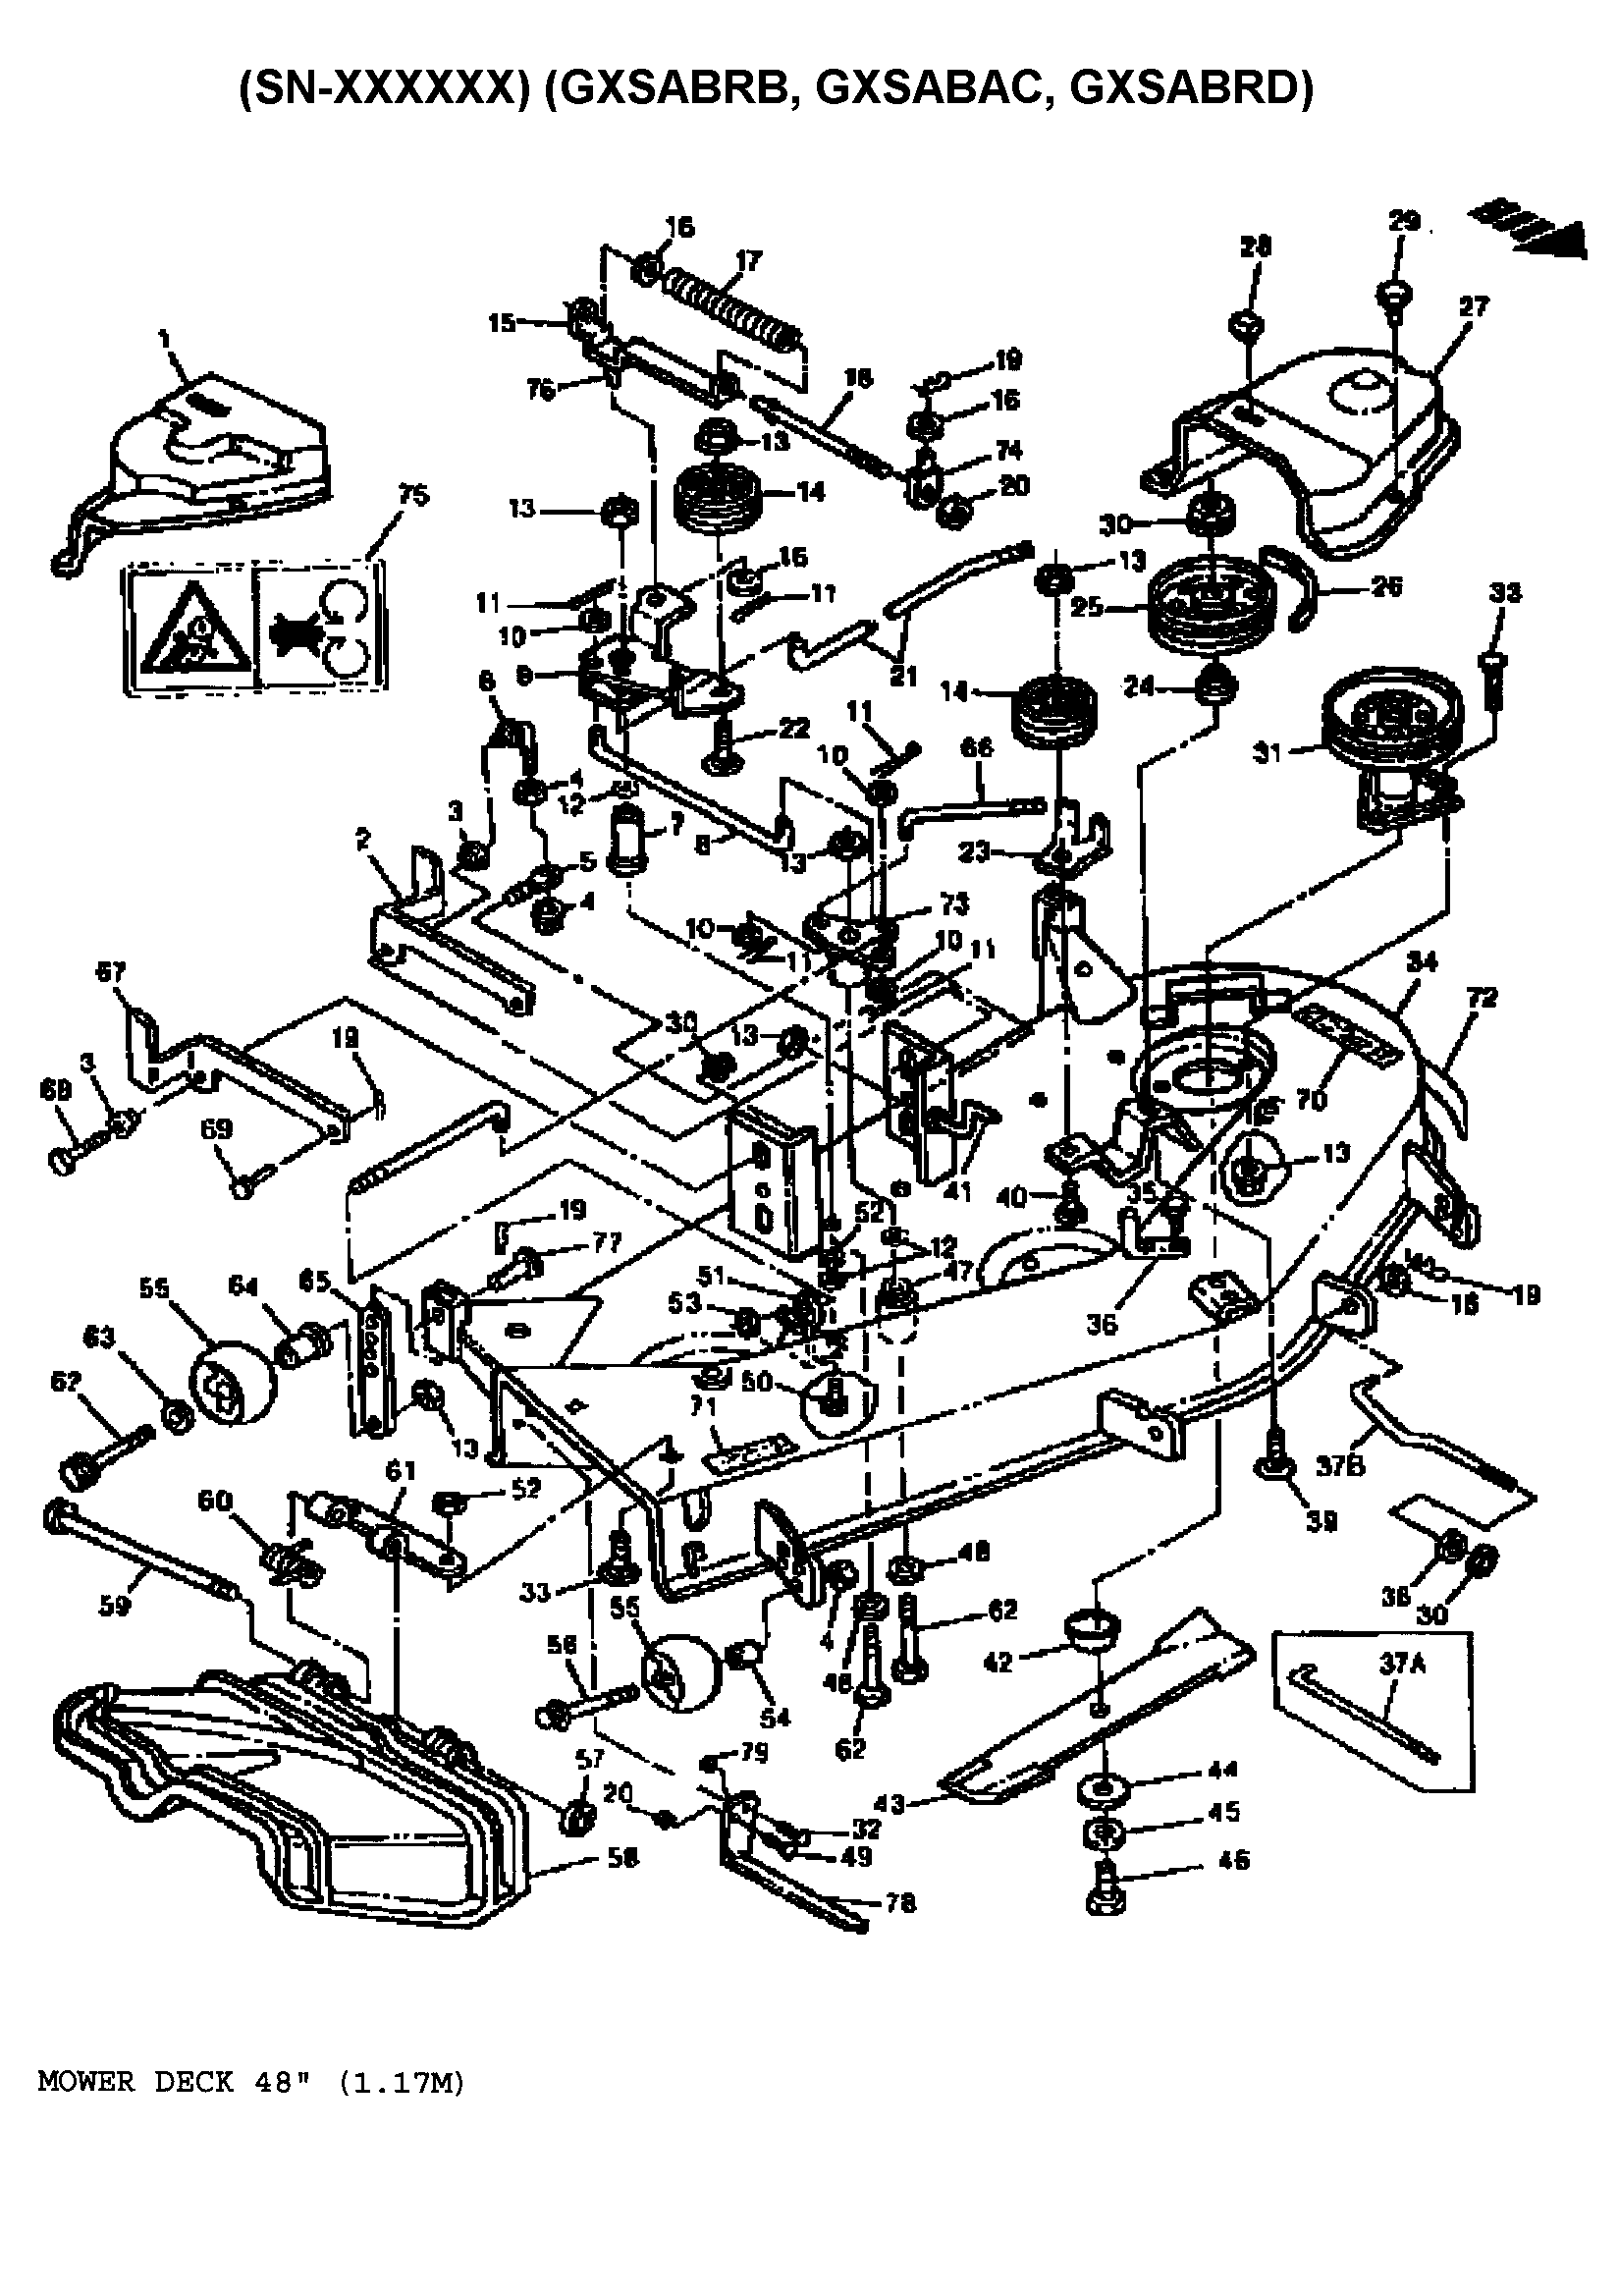 John Deere Mower Deck Schematic